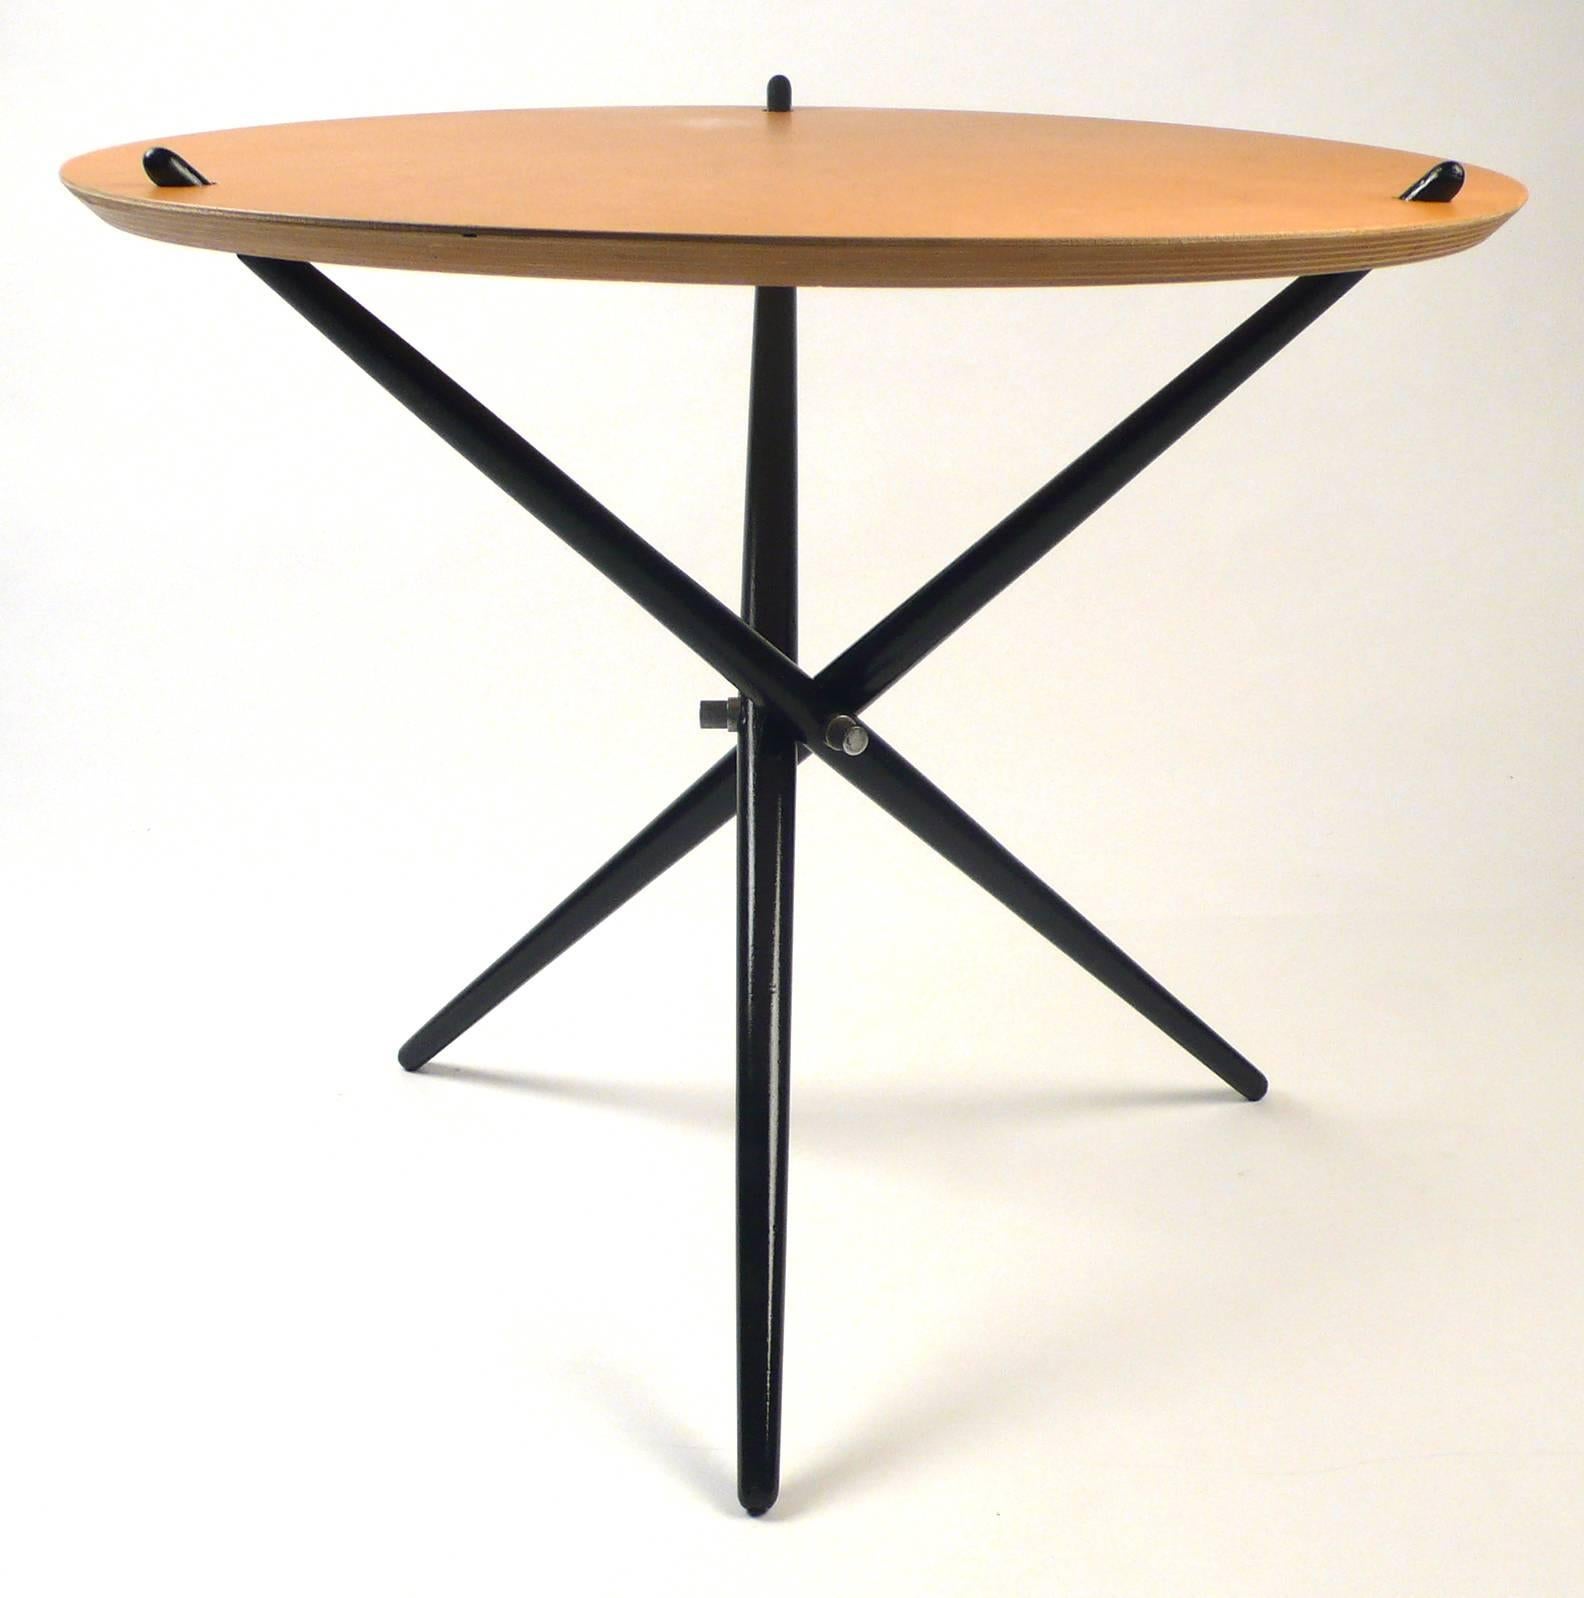 Tripod-Tische von Knoll, 1948, schwarz und Holz (Moderne der Mitte des Jahrhunderts)